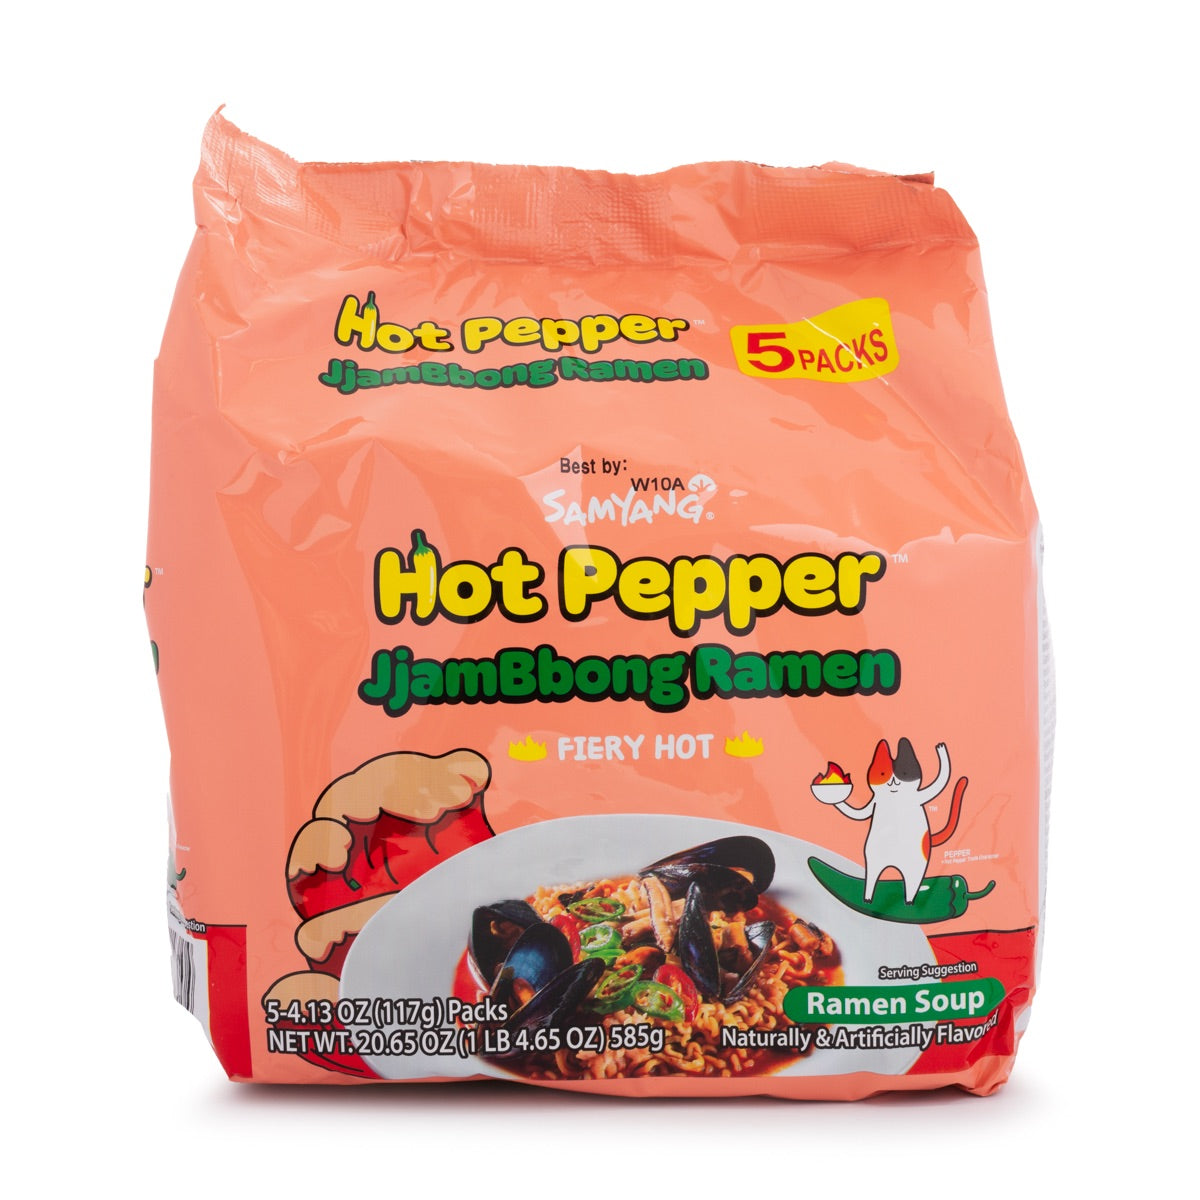 Samyang Fiery Hot Pepper JjamBbong Ramen - 5 paquetes